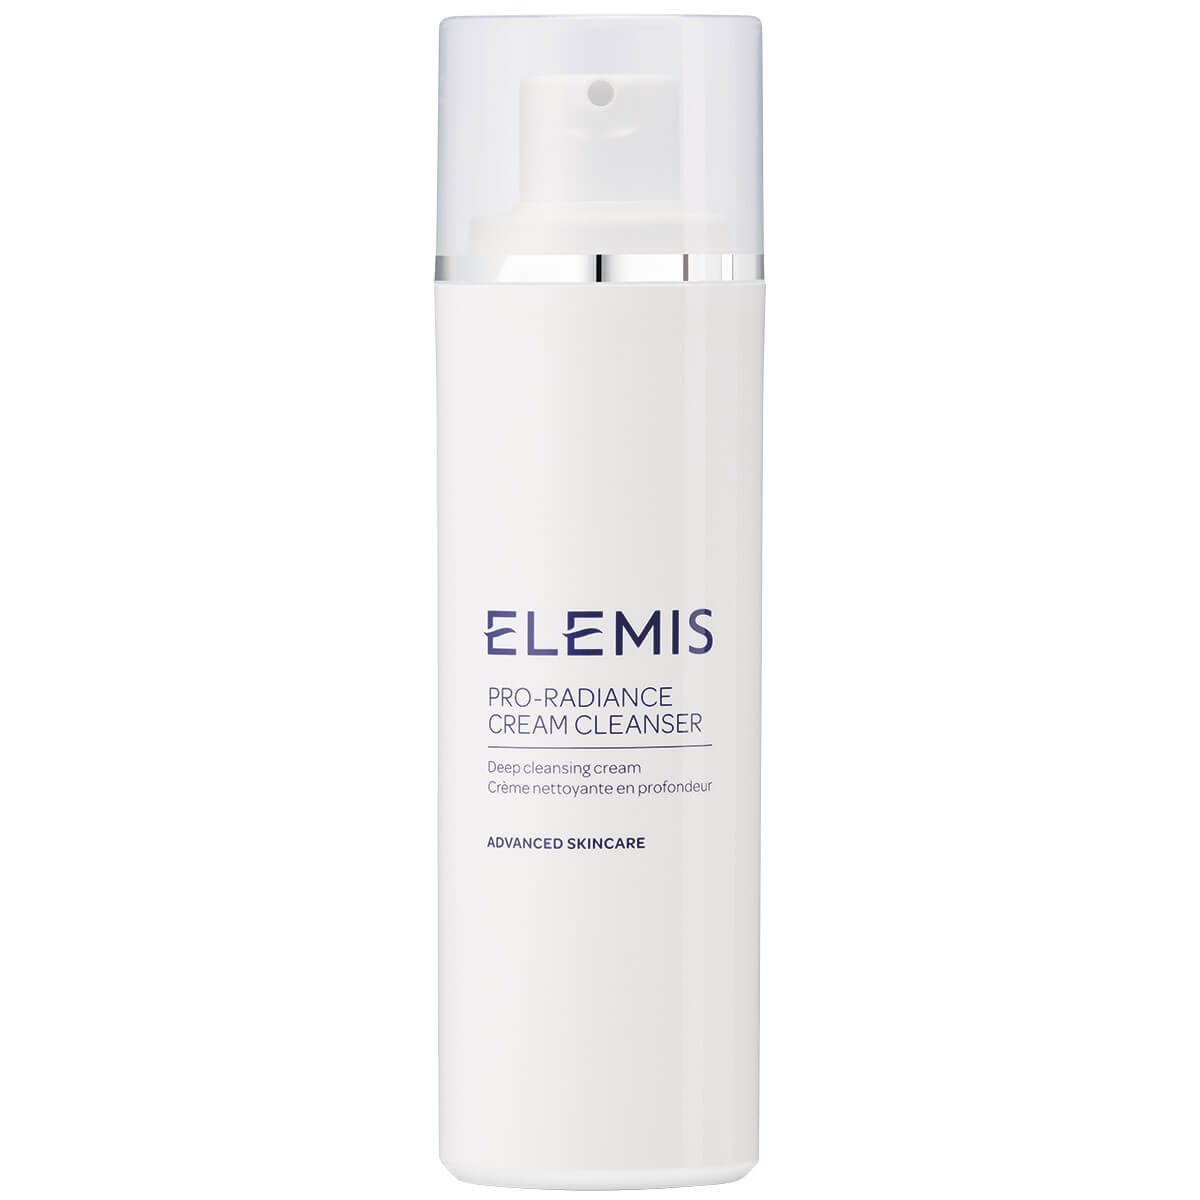 ELEMIS Pro-Radiance Cream Cleanser